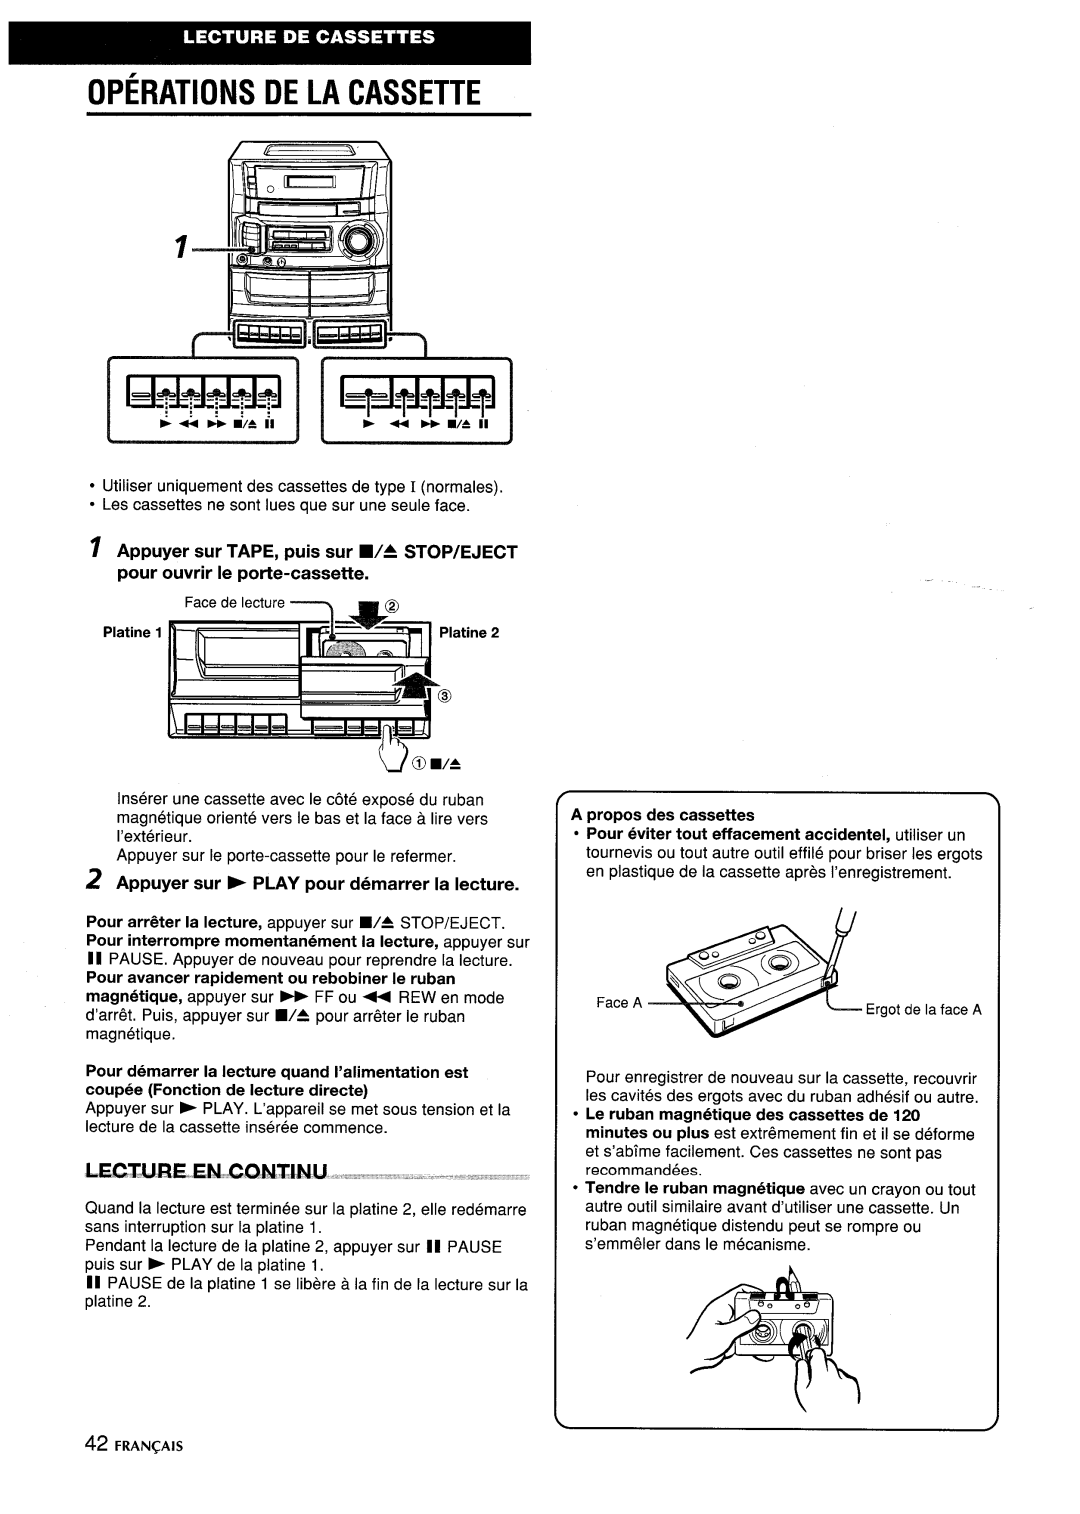 Aiwa CA-DW635 Operations De La Cassette, z Appuyer sur b PLAY pour demarrer la lecture, Platine, Apropos des cassettes 